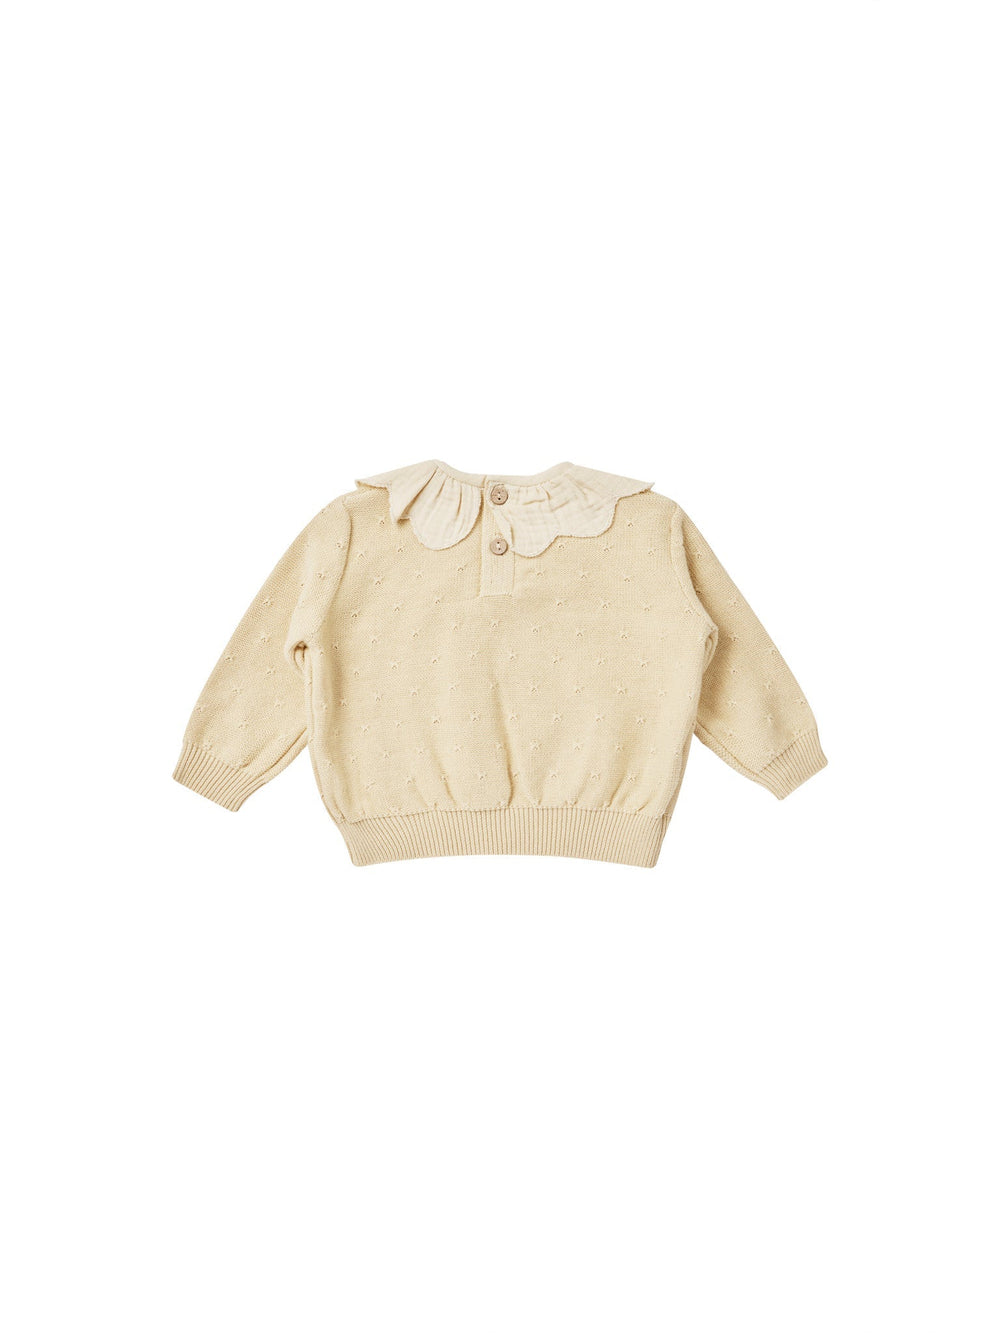 Quincy Mae Sweater Petal Knit Sweater - Lemon